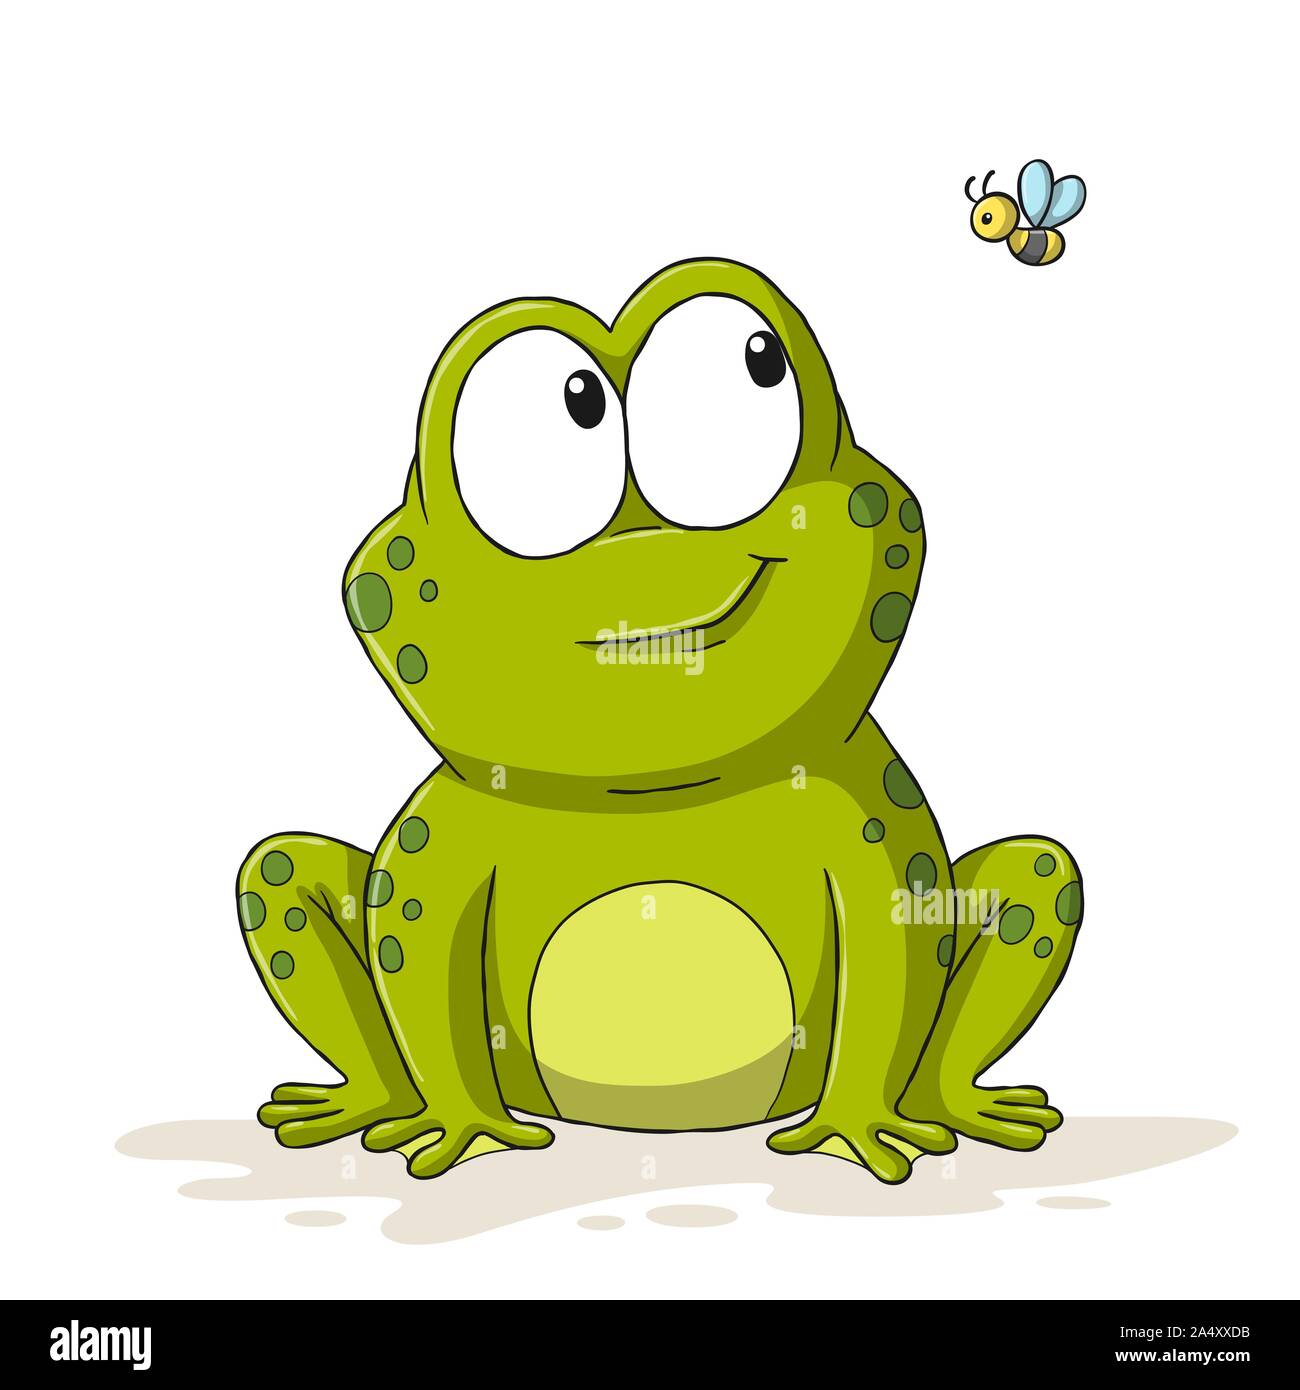 Lustige cartoon Frosch mit Biene. Hand Vector Illustration mit separaten  Ebenen gezeichnet Stock-Vektorgrafik - Alamy